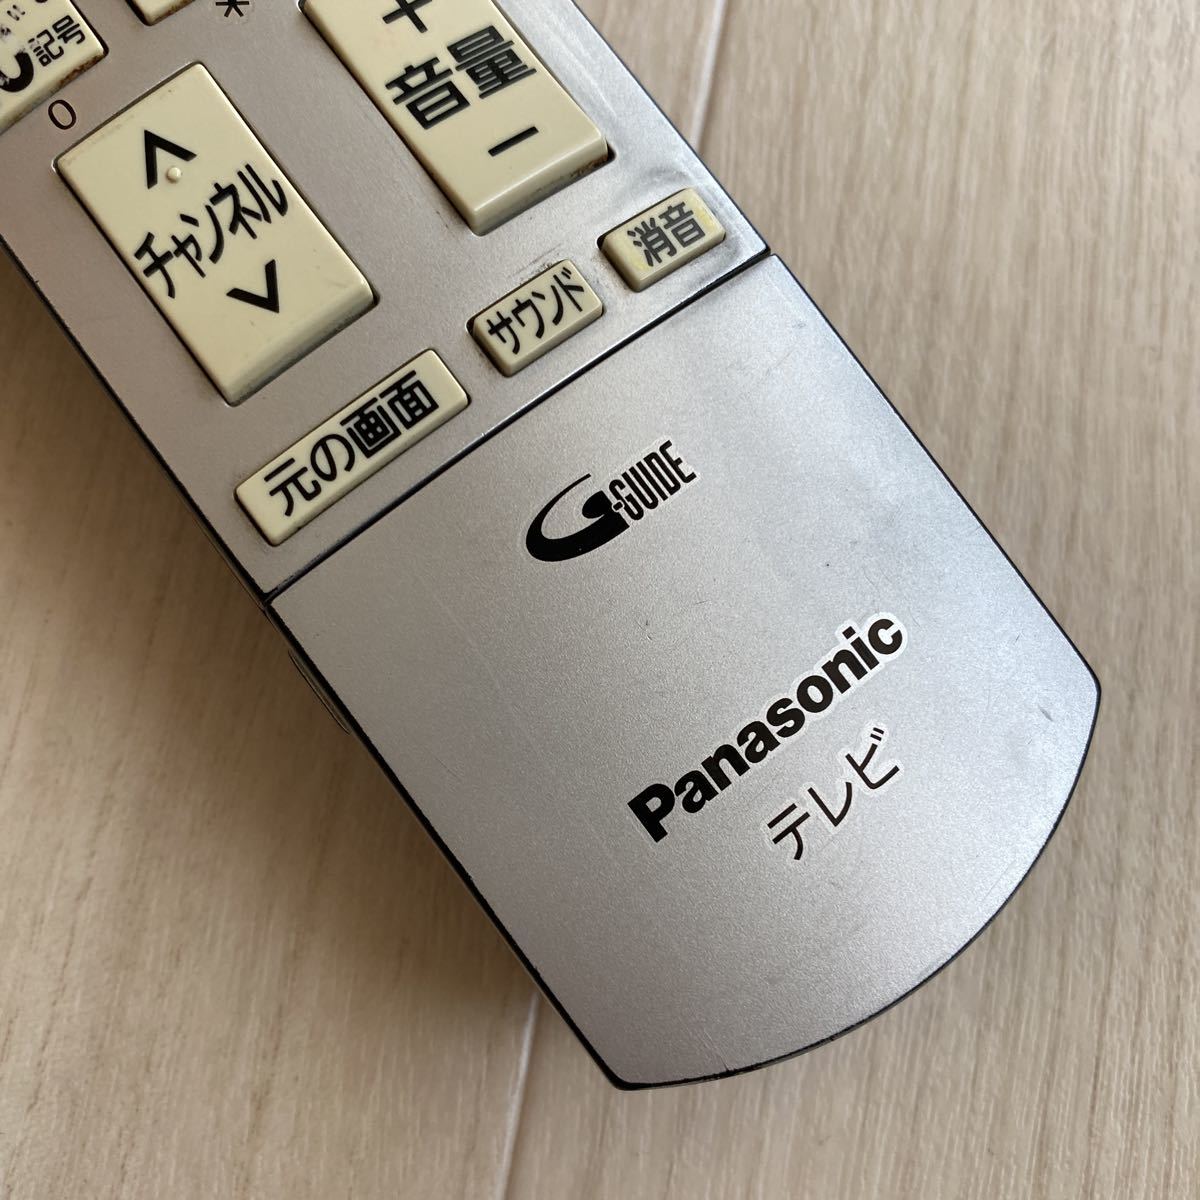 Panasonic EUR7667Z20 パナソニック テレビリモコン 送料無料 S356